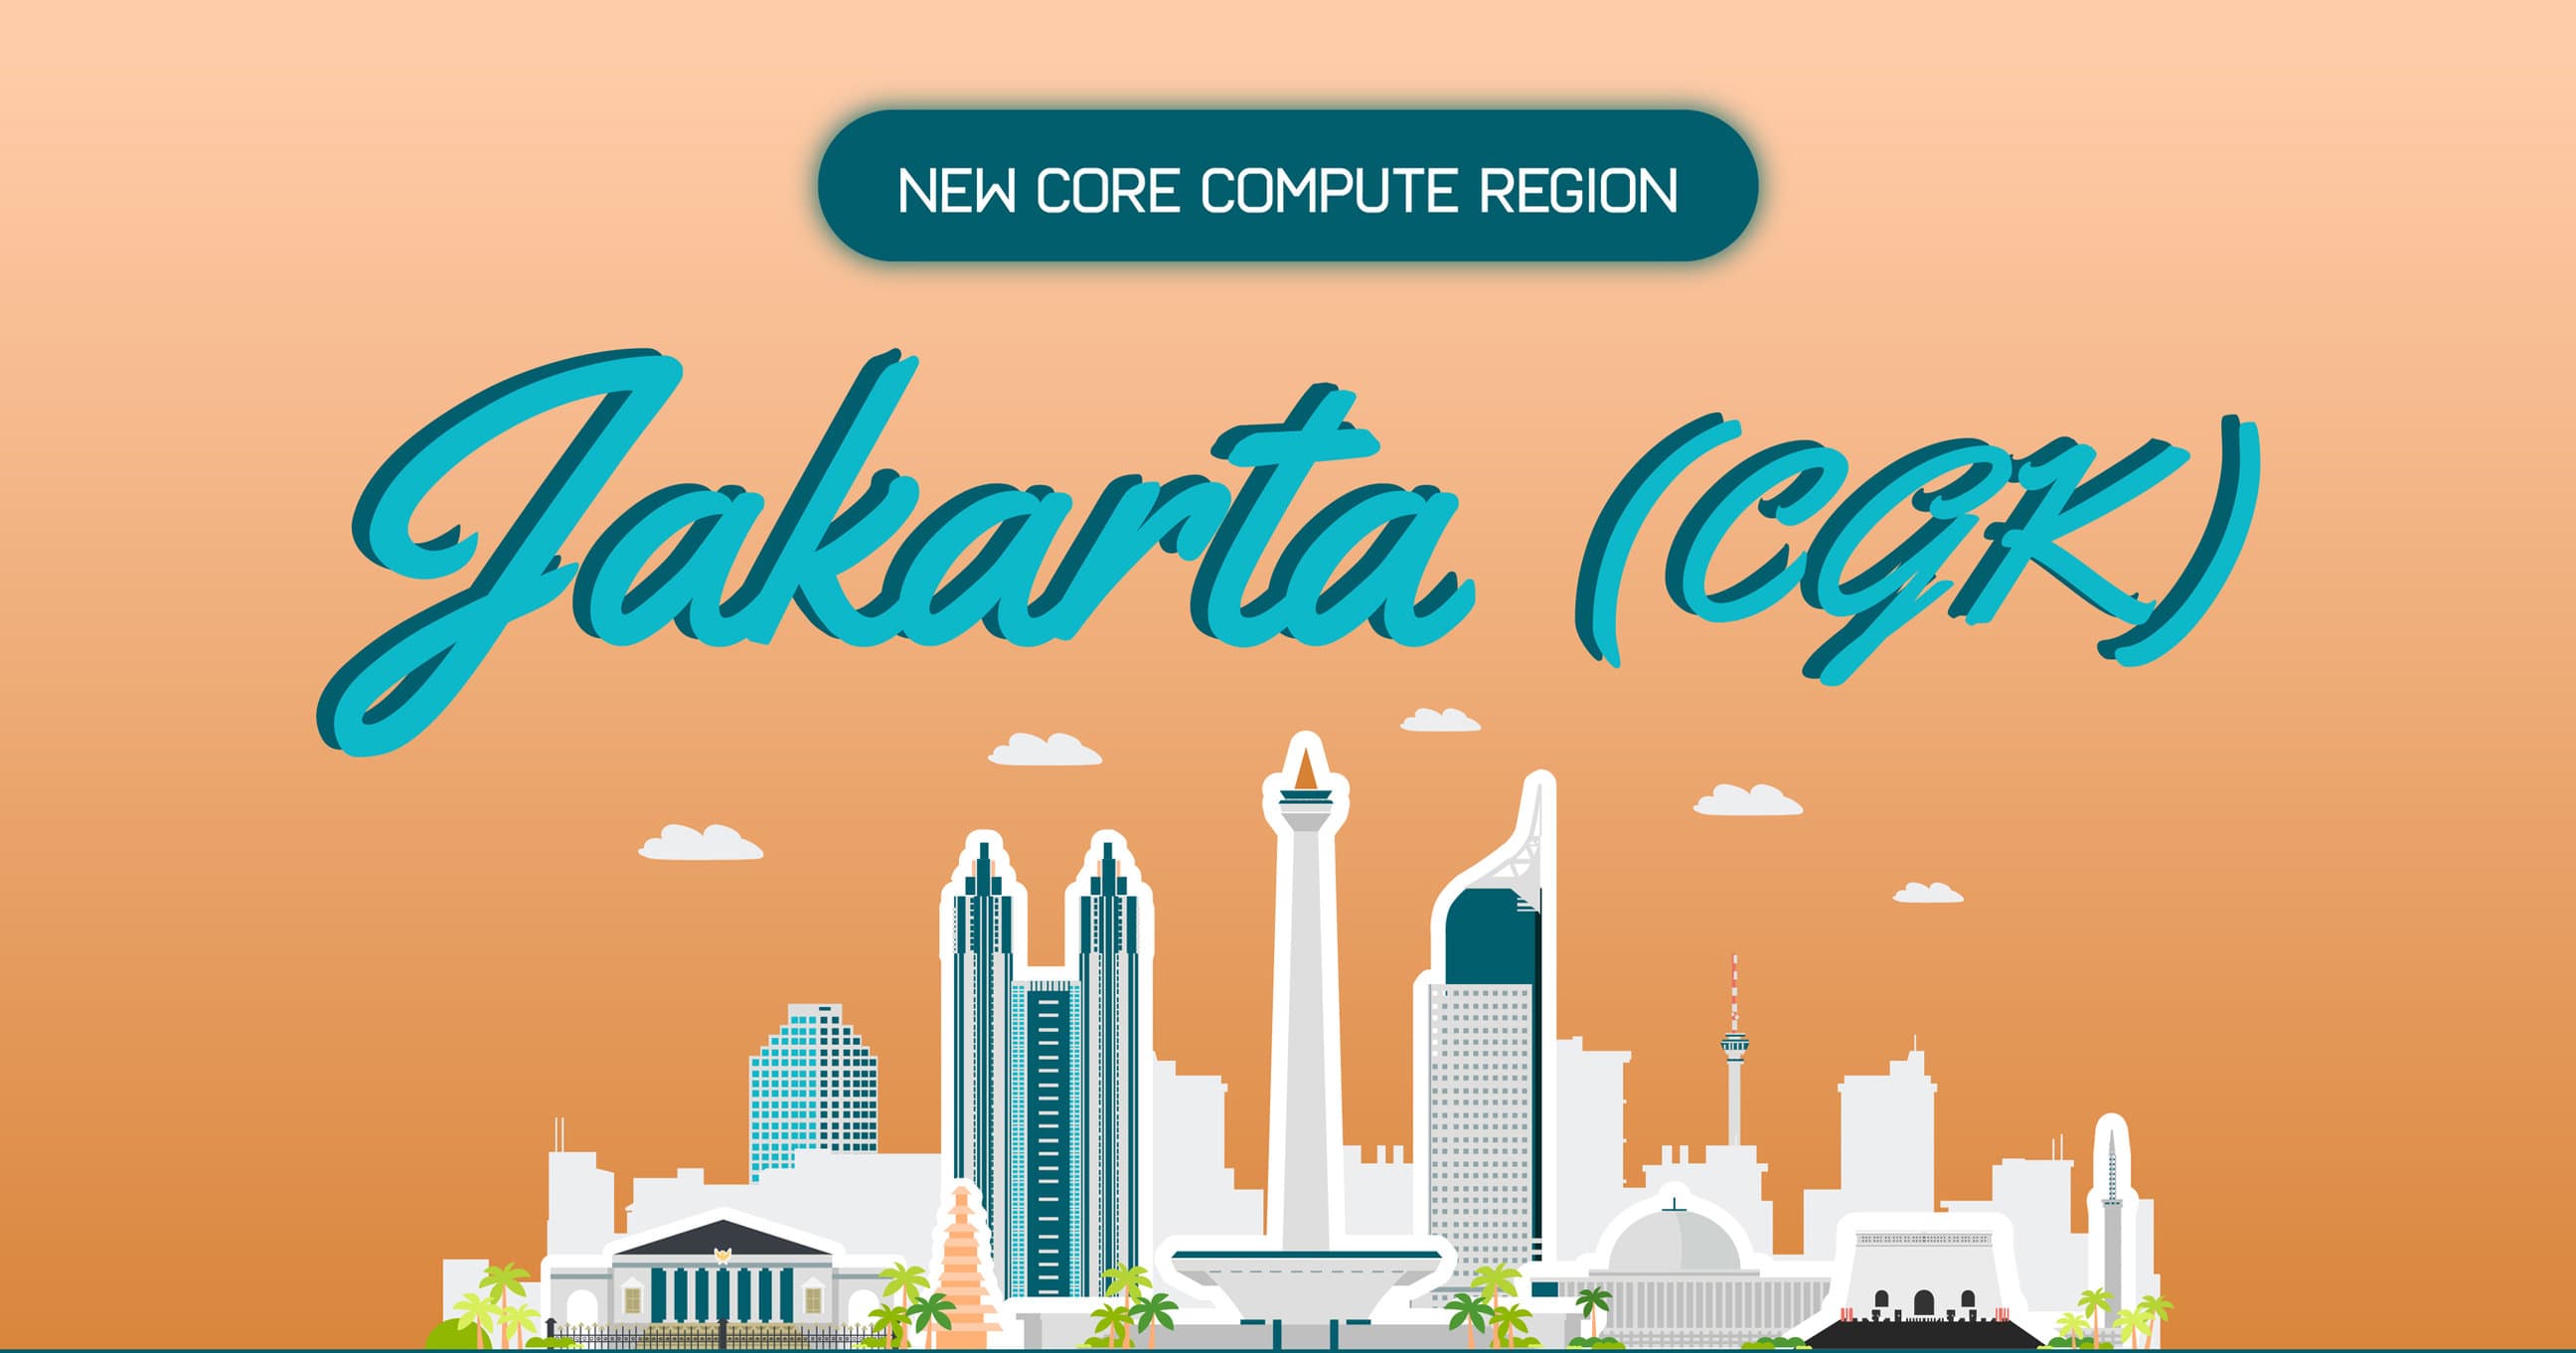 자카르타와 함께 아시아 태평양 핵심 컴퓨팅 지역의 성장을 발표합니다!